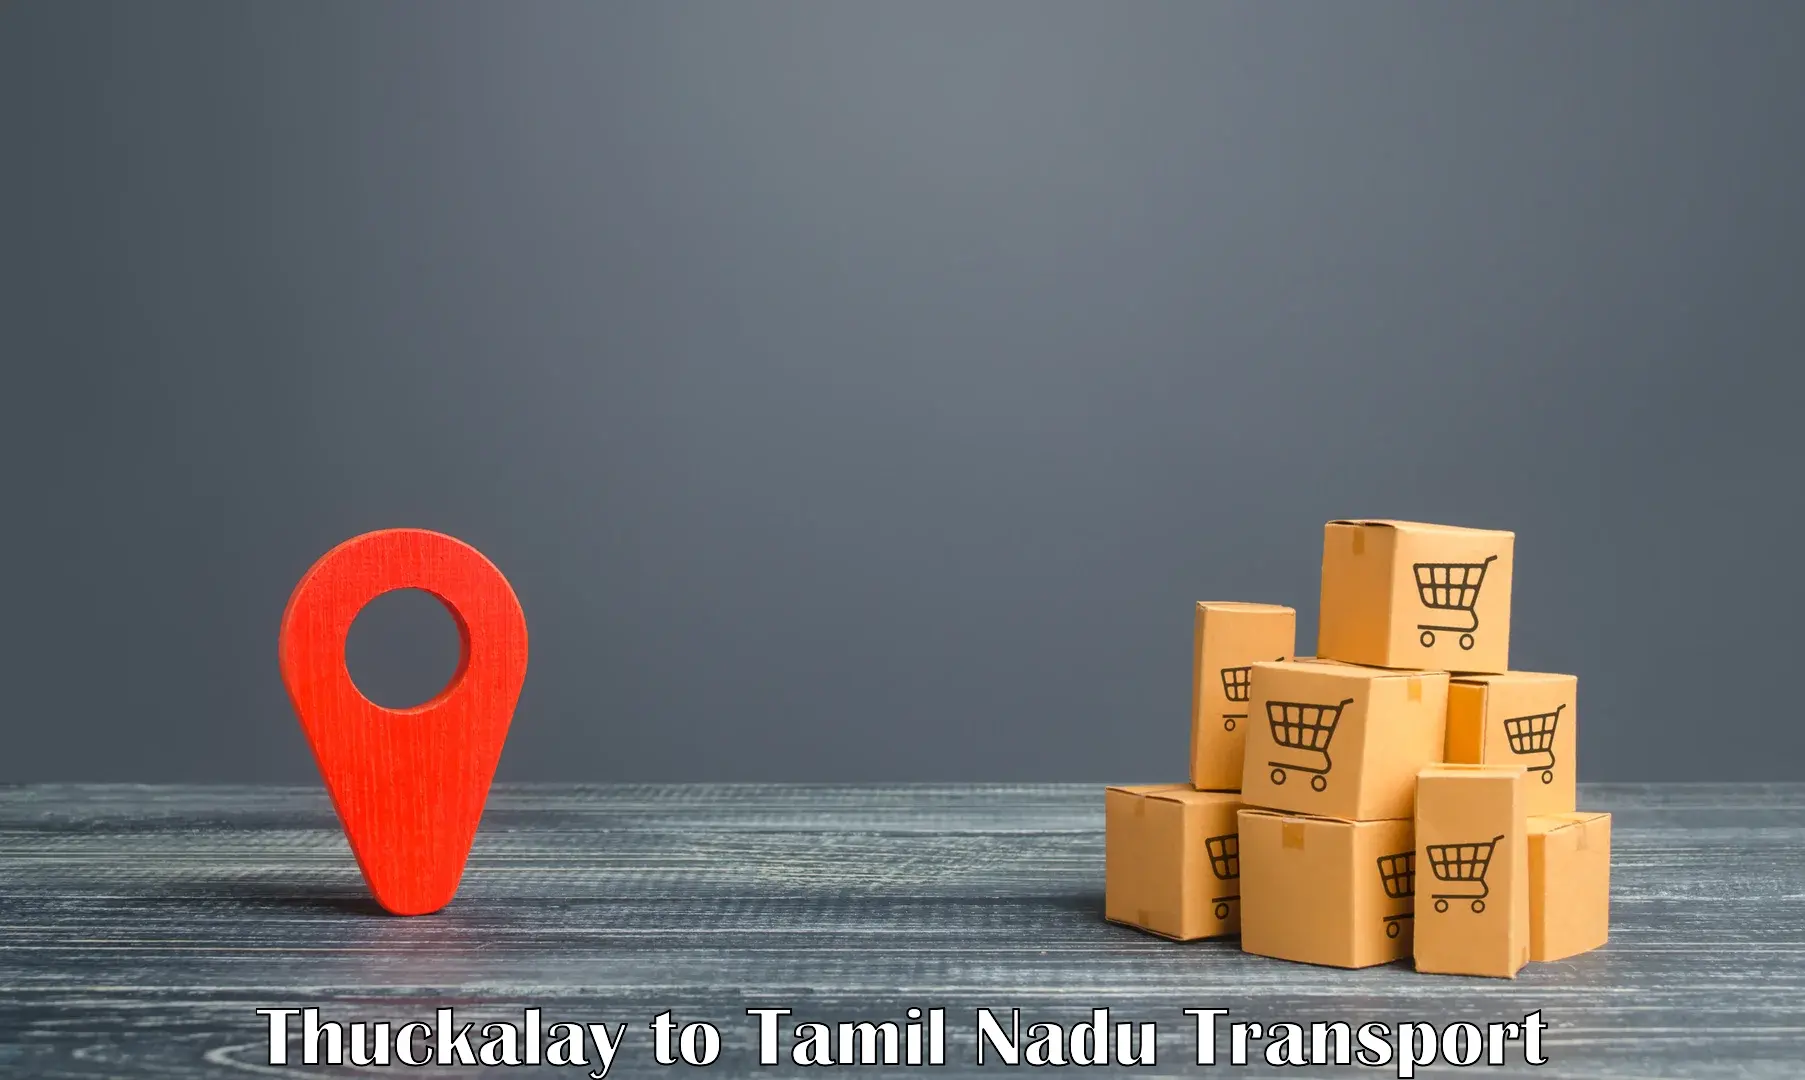 Daily transport service Thuckalay to Anna University Chennai